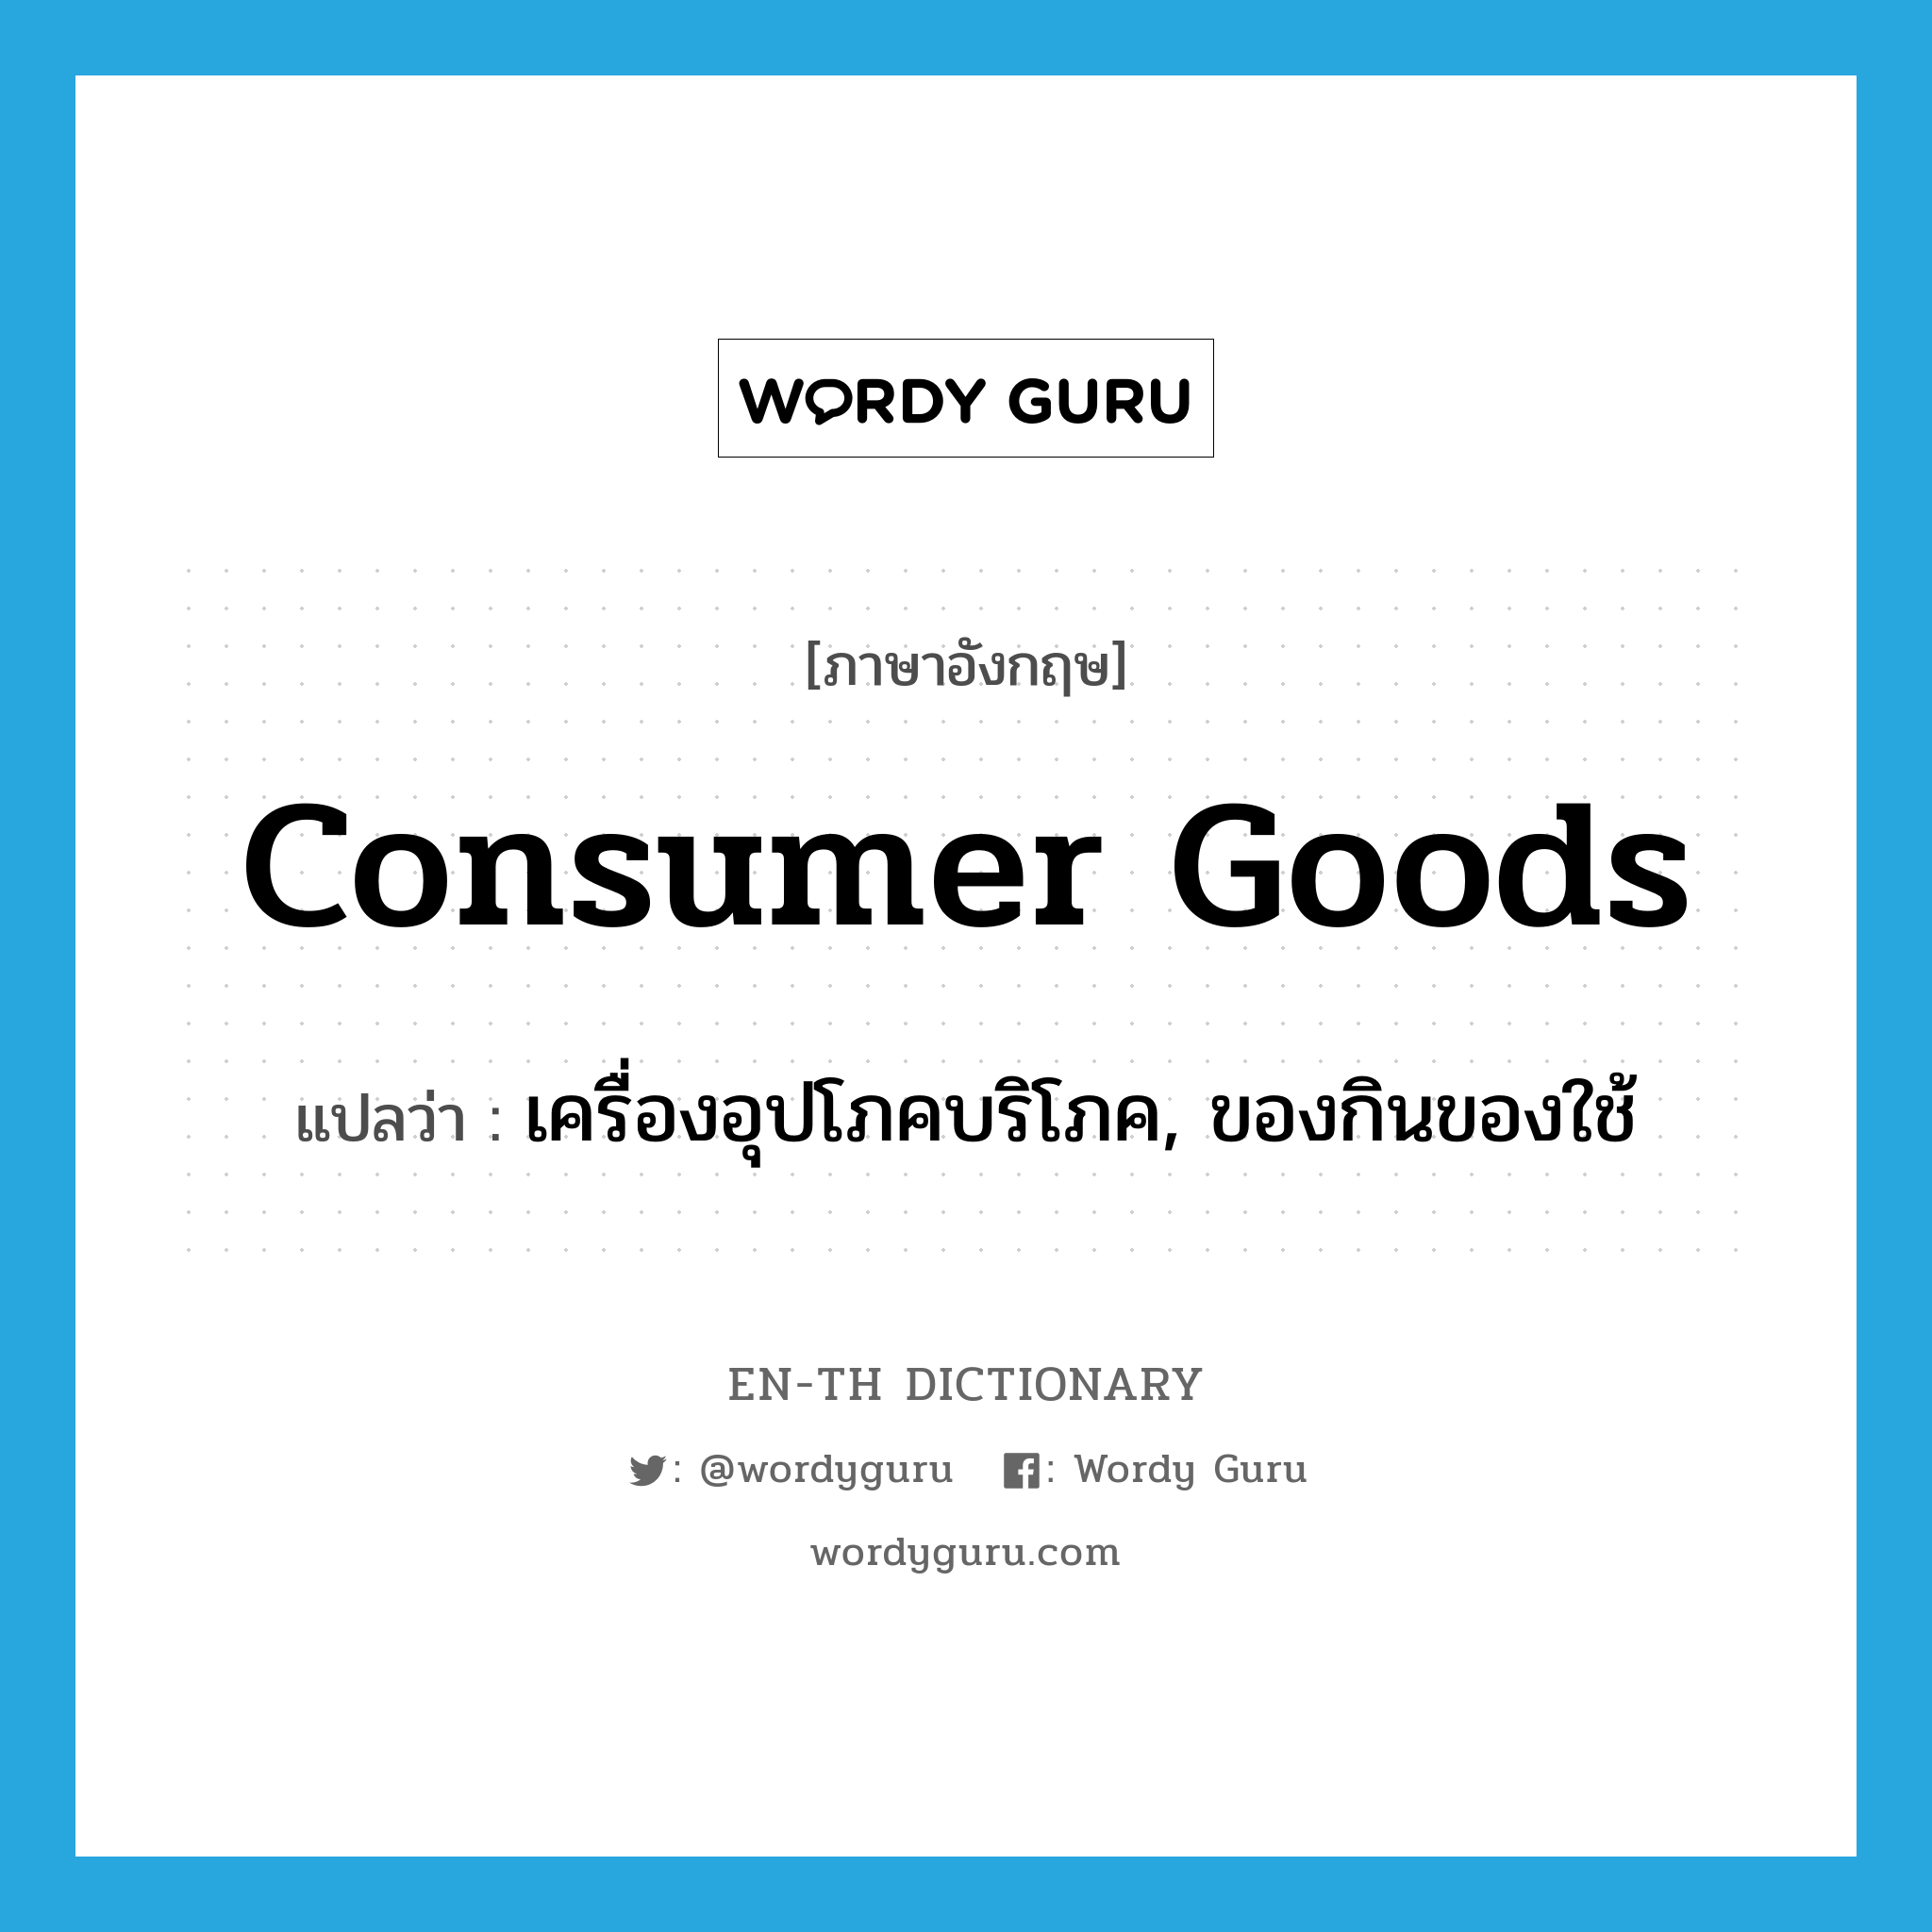 เครื่องอุปโภคบริโภค, ของกินของใช้ ภาษาอังกฤษ?, คำศัพท์ภาษาอังกฤษ เครื่องอุปโภคบริโภค, ของกินของใช้ แปลว่า consumer goods ประเภท N หมวด N